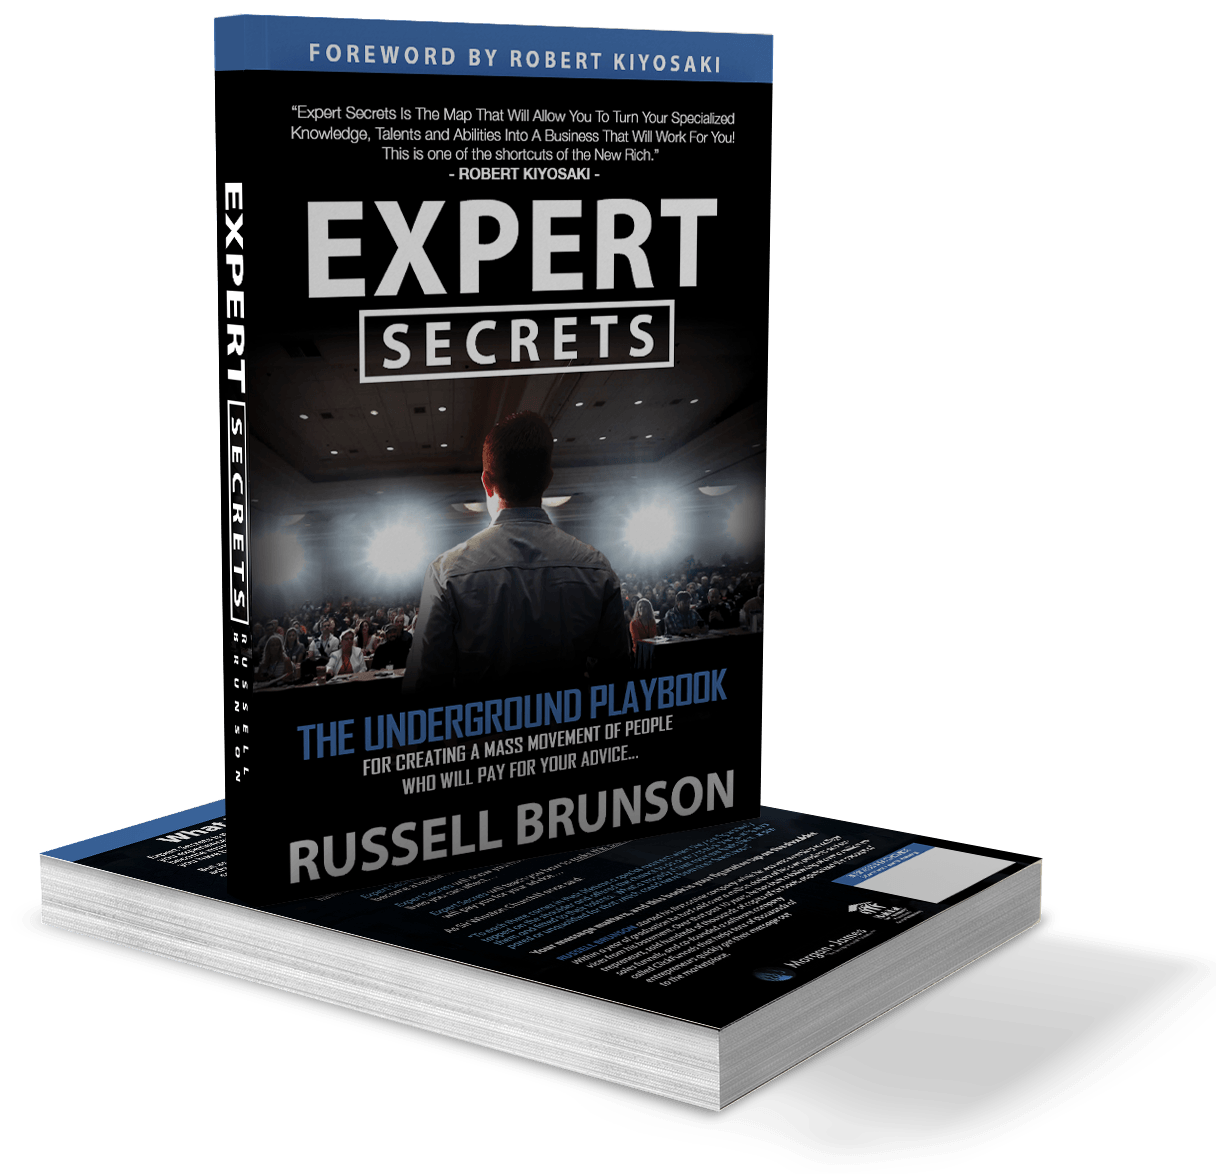 Get Expert Secrets Book For Free - Russell Brunson 